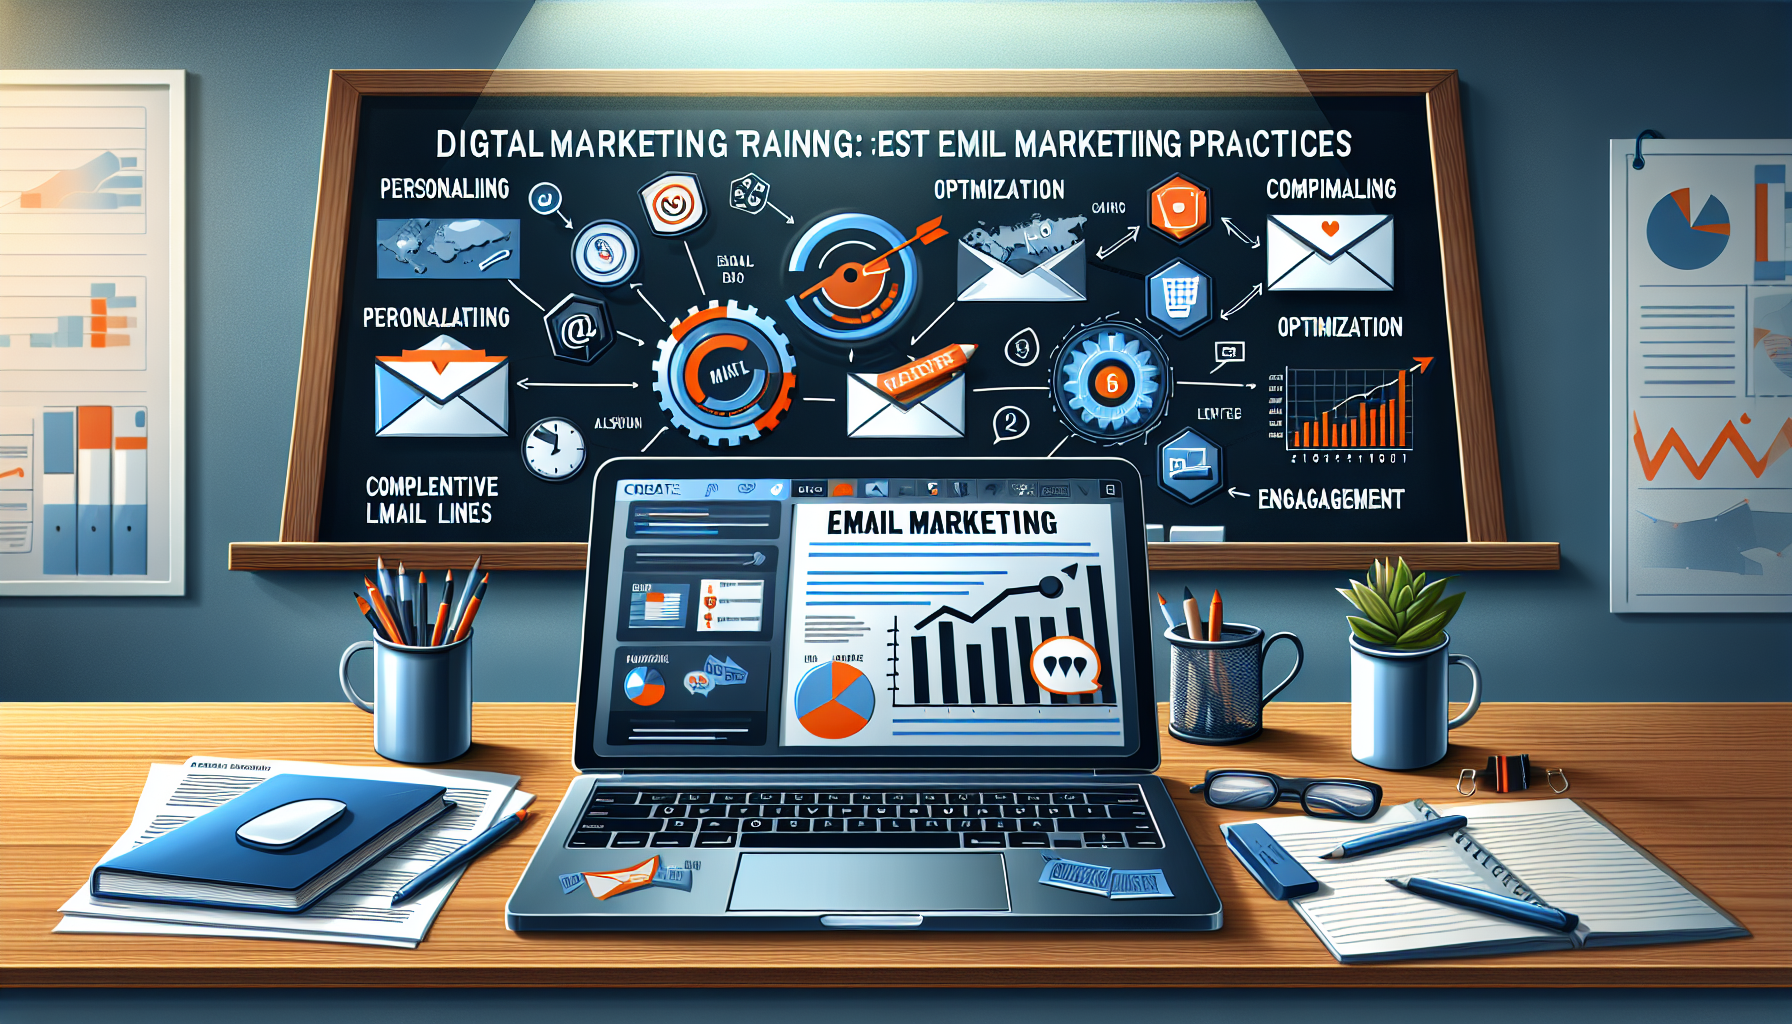 découvrez les meilleures pratiques en email marketing avec notre formation en marketing digital. apprenez à optimiser vos stratégies d'email marketing pour atteindre vos objectifs commerciaux.